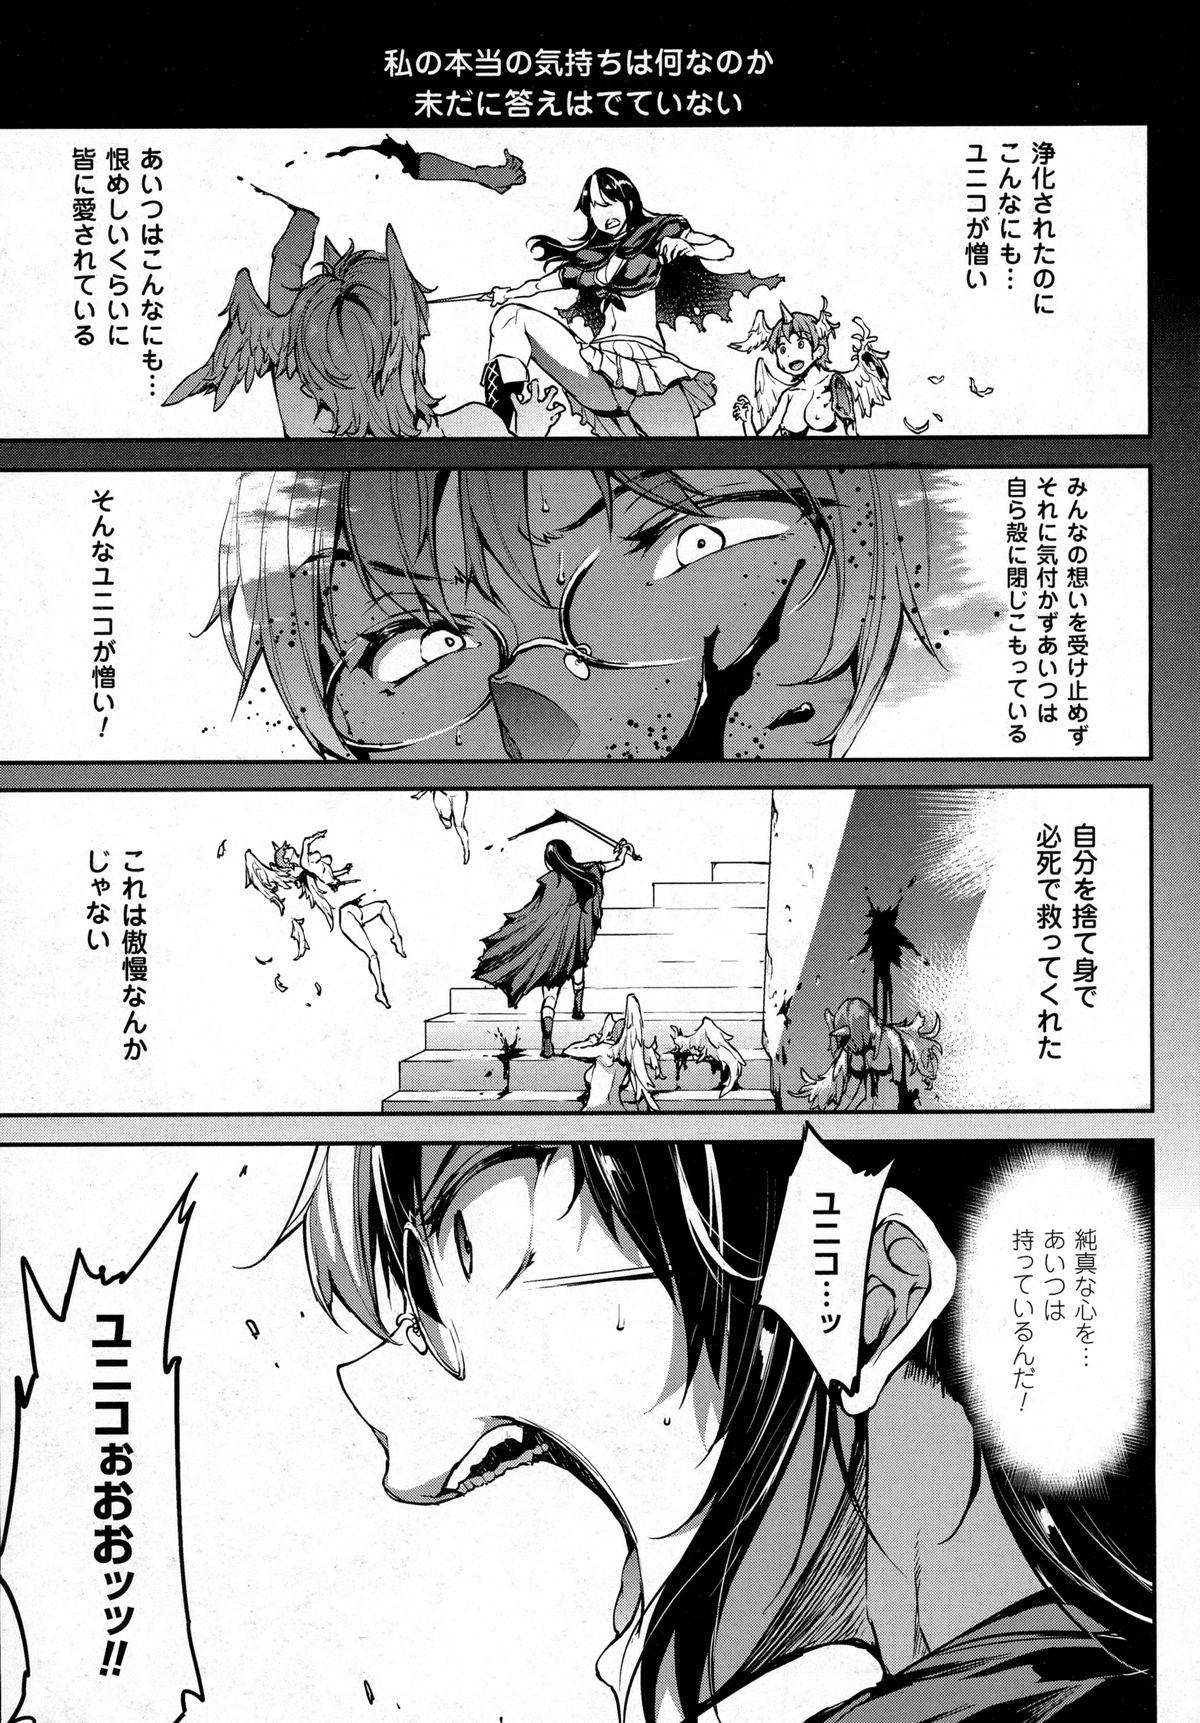 [Erect Sawaru] Shinkyoku no Grimoire -PANDRA saga 2nd story- CH 13-20 161